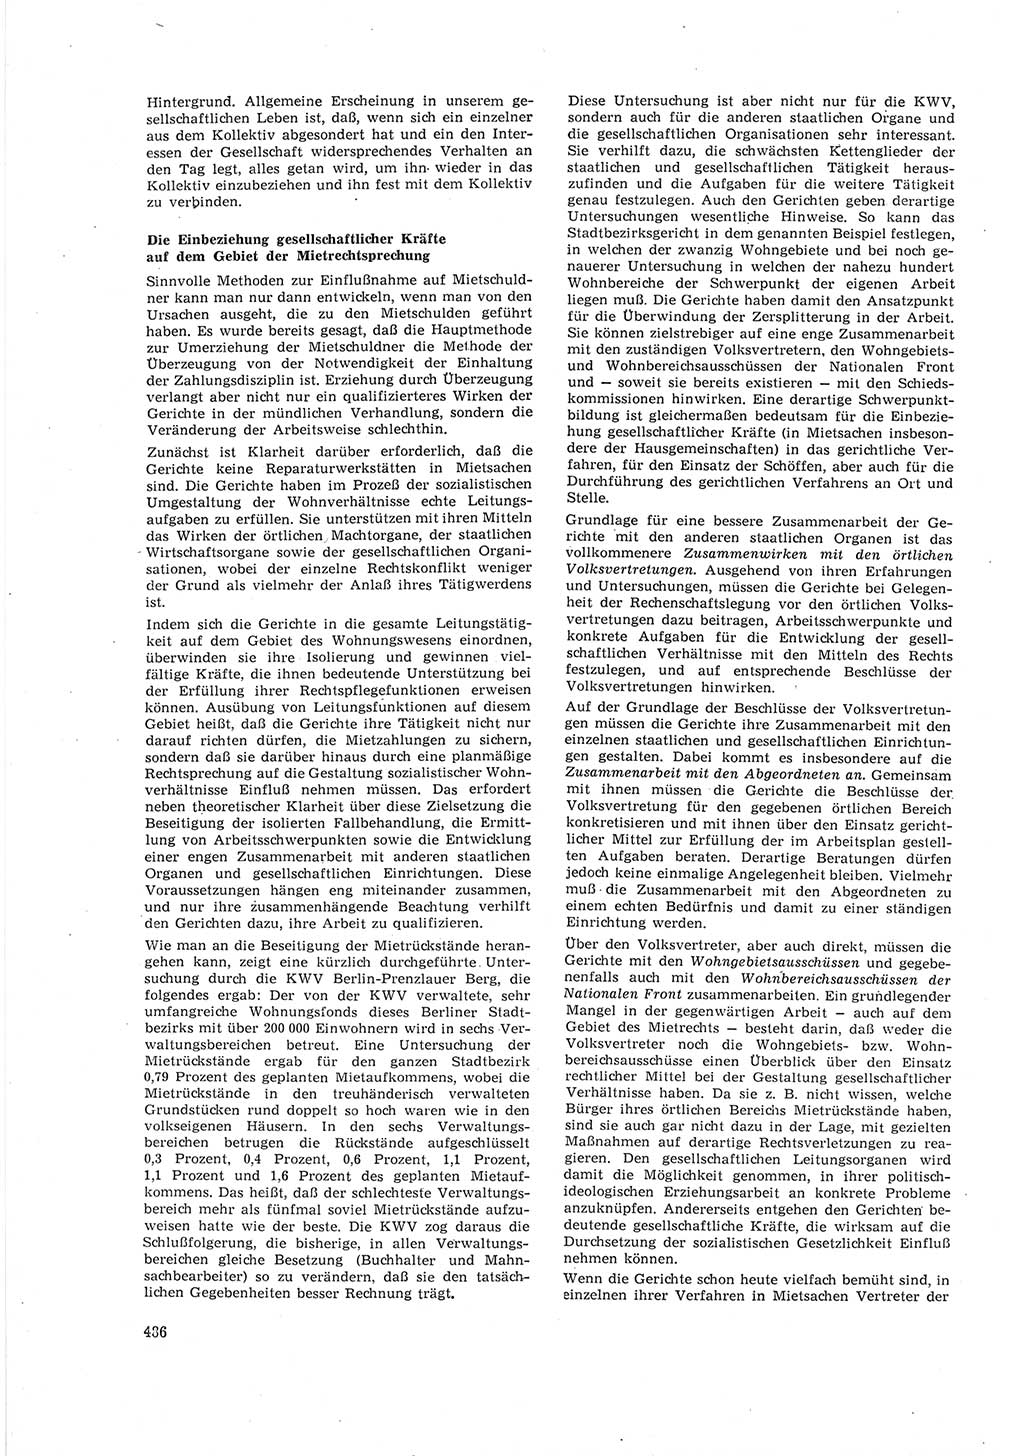 Neue Justiz (NJ), Zeitschrift für Recht und Rechtswissenschaft [Deutsche Demokratische Republik (DDR)], 18. Jahrgang 1964, Seite 486 (NJ DDR 1964, S. 486)